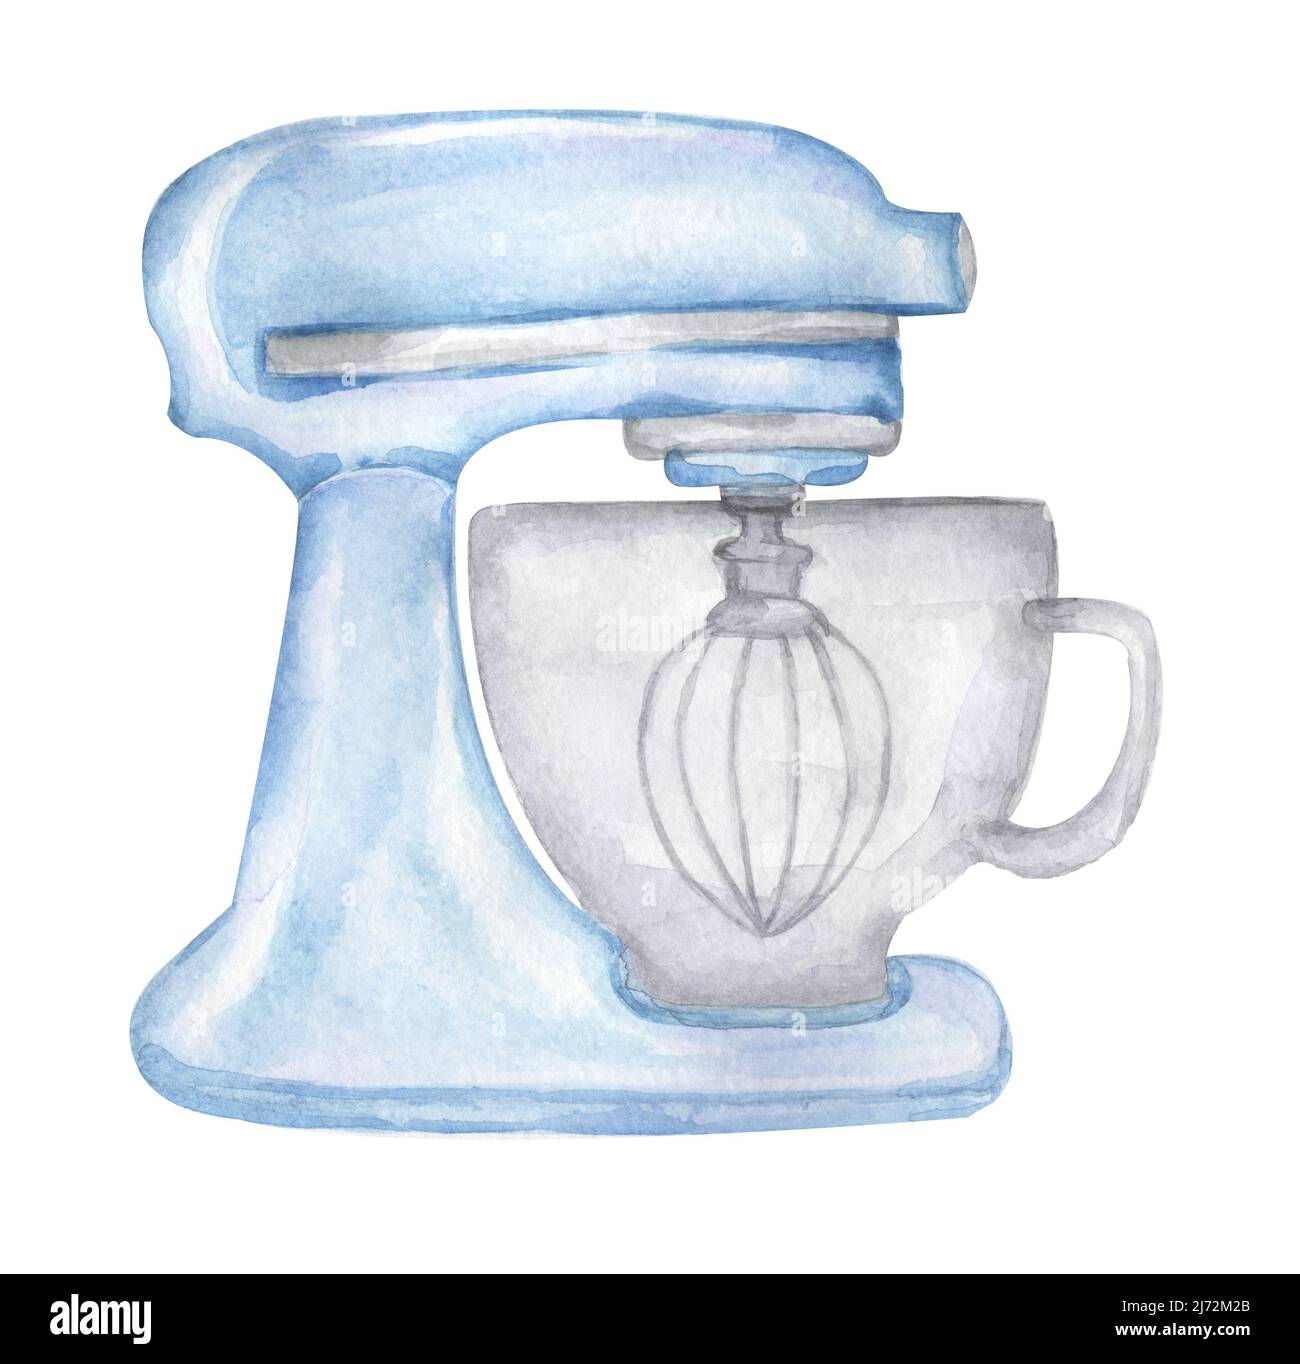 Aquarell blau Mixer Clip Art, Schlagbild, handgezeichnetes Bäckerutensilien, Küchengarn, Bake Logo Design Stockfoto